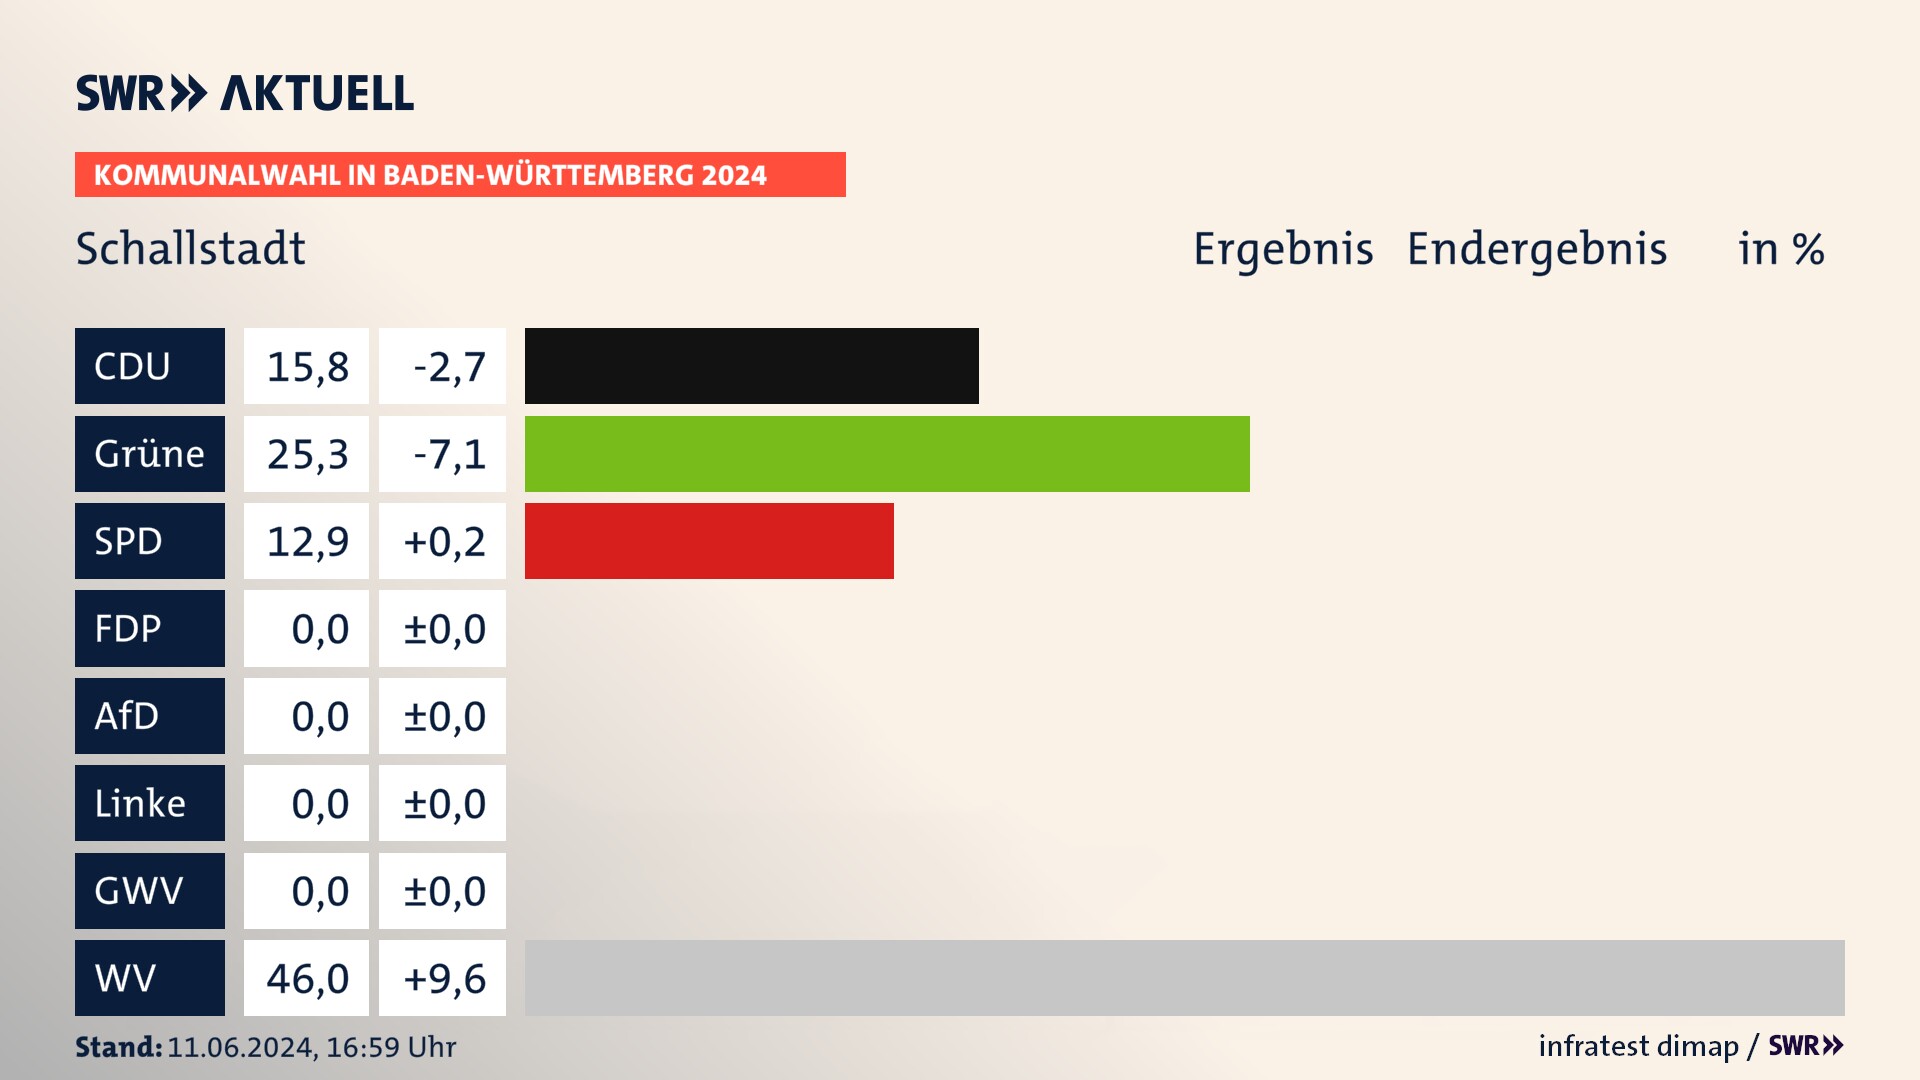 Kommunalwahl 2024 Endergebnis Zweitstimme für Schallstadt. In Schallstadt erzielt die CDU 15,8 Prozent der gültigen  Stimmen. Die Grünen landen bei 25,3 Prozent. Die SPD erreicht 12,9 Prozent. Die Wählervereinigungen kommen auf 46,0 Prozent.